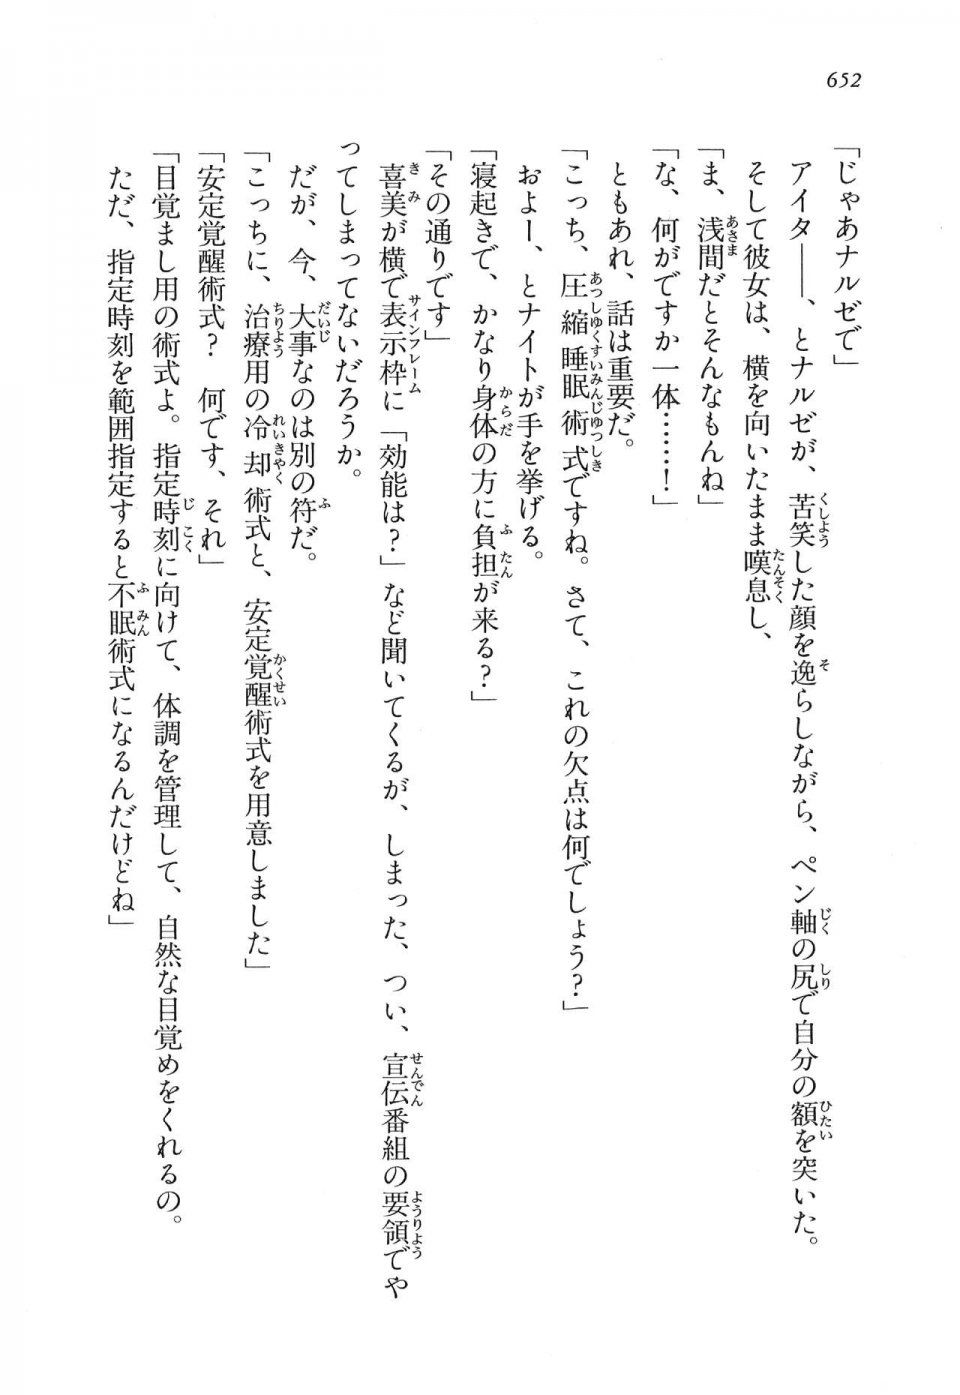 Kyoukai Senjou no Horizon LN Vol 16(7A) - Photo #652